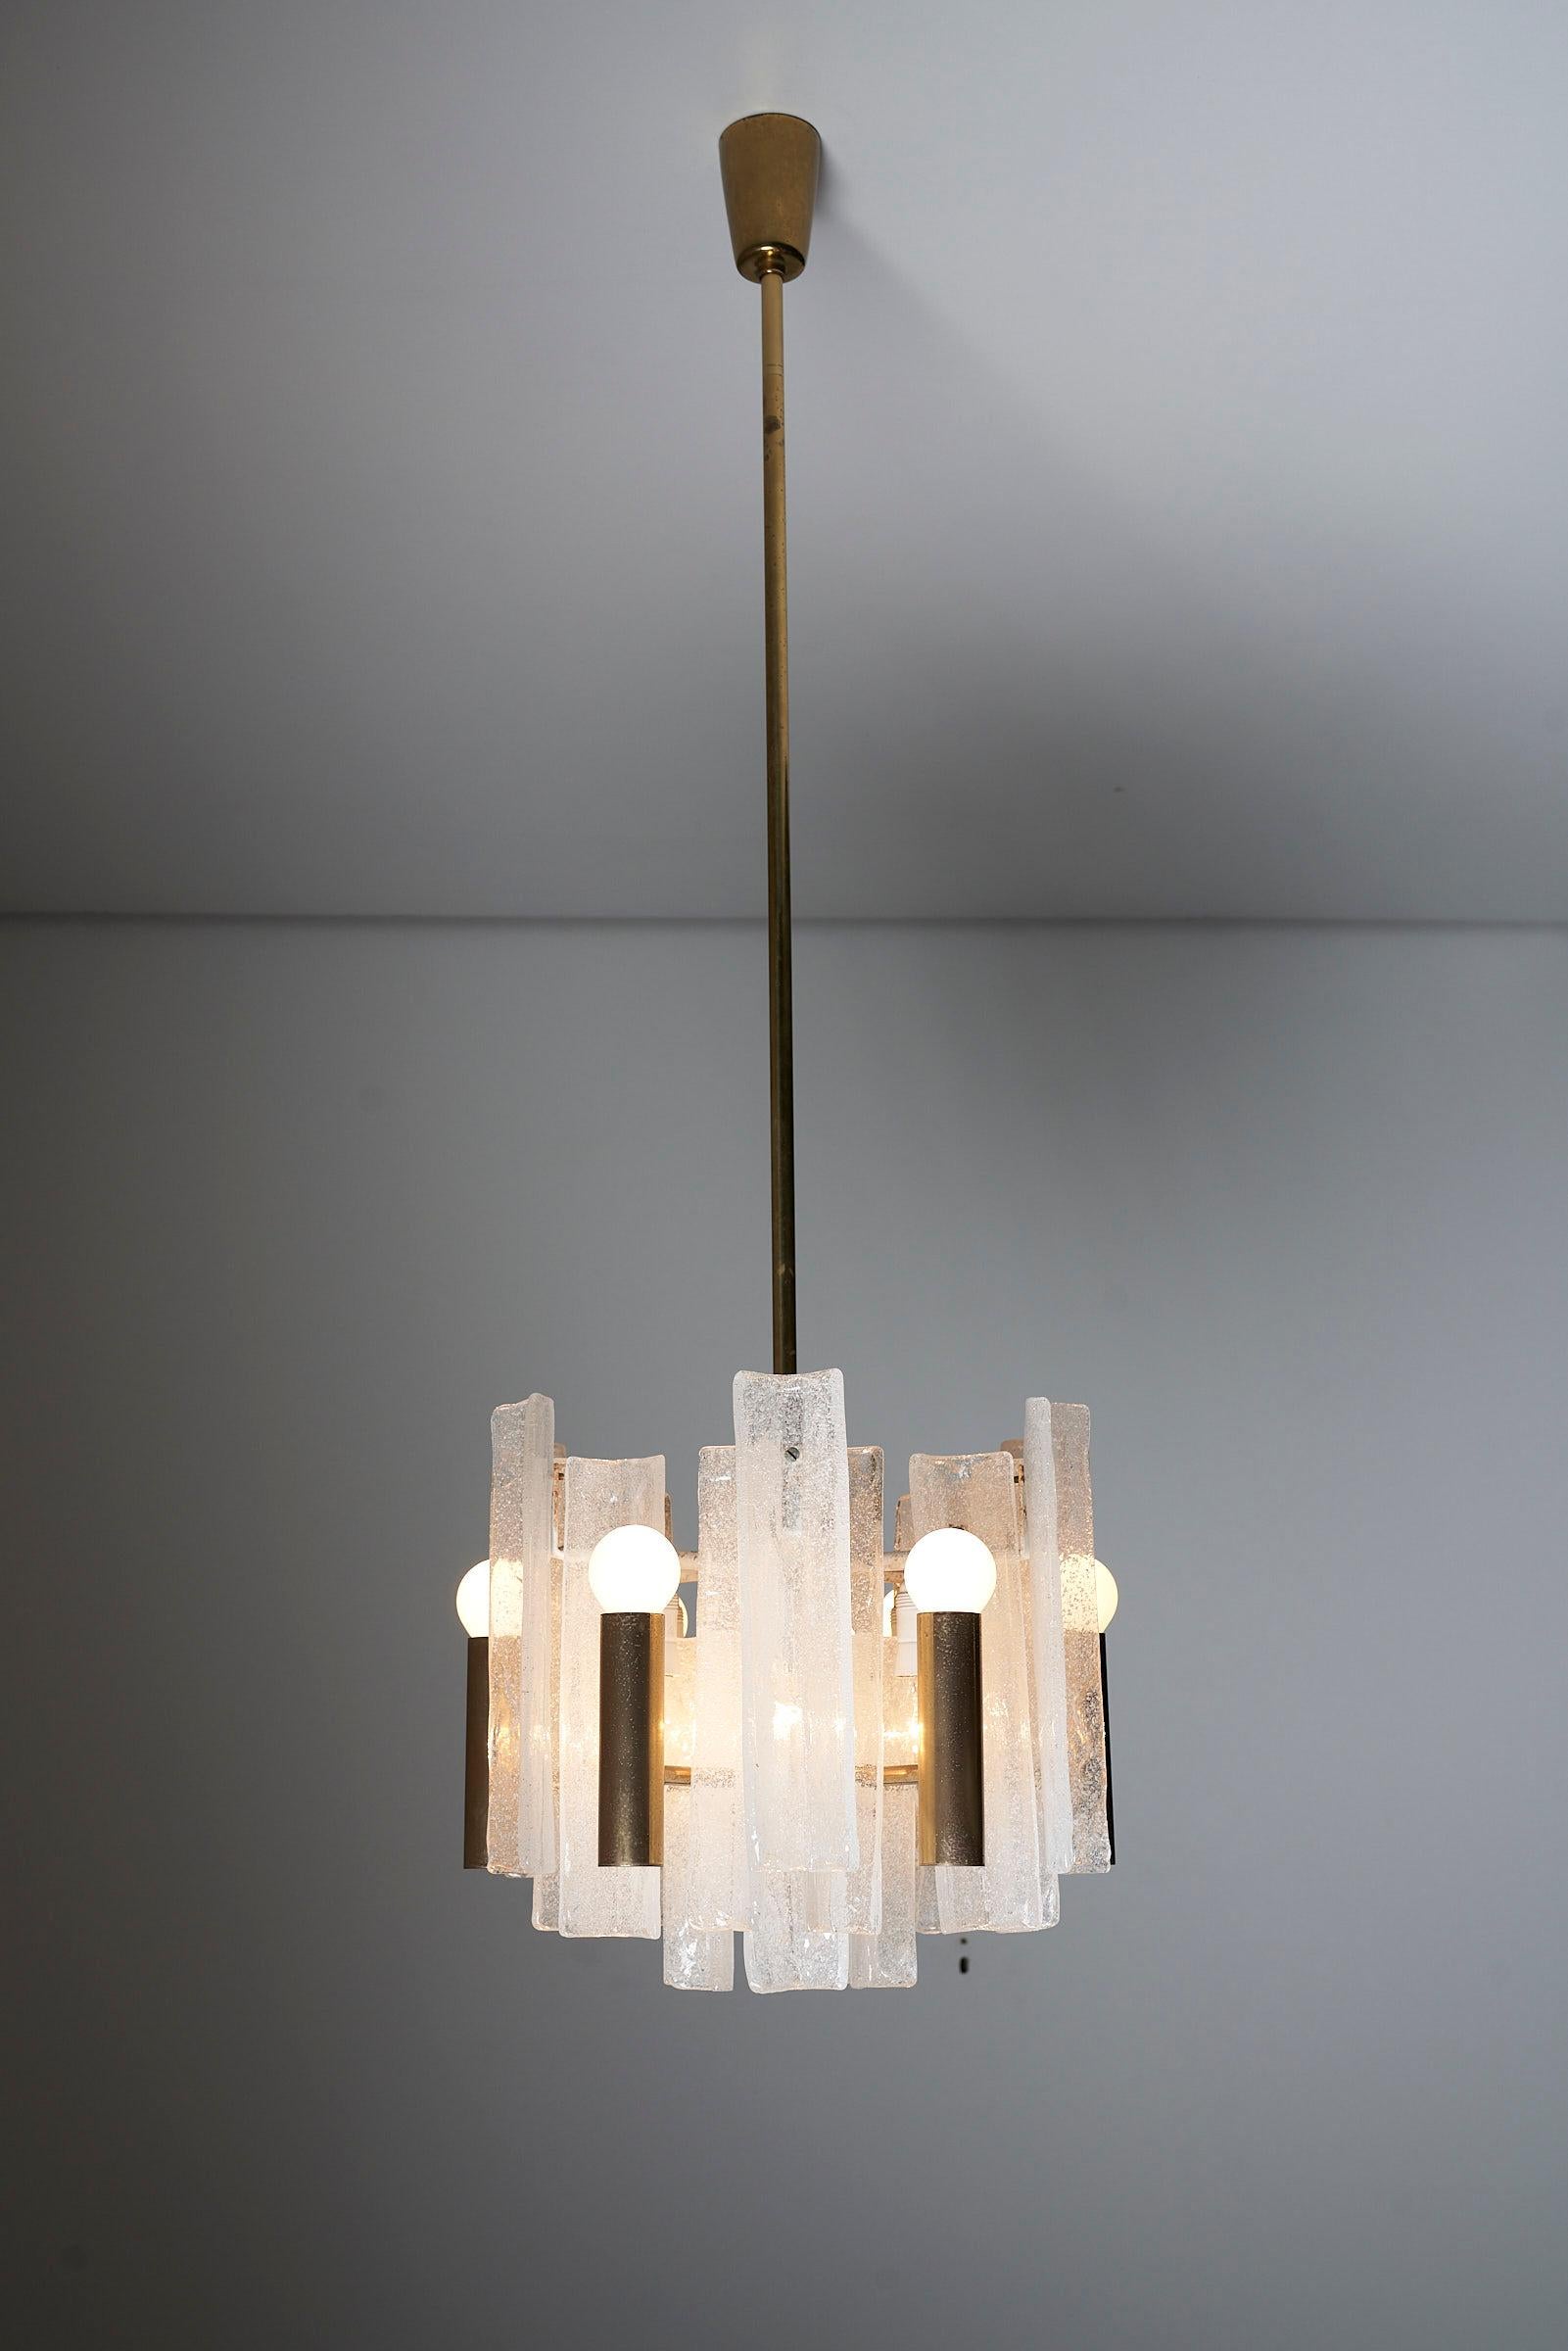 Voici le lustre Lipizza de J.T. Kalmar, une marque autrichienne de luminaires réputée pour son savoir-faire artisanal et ses designs intemporels. Fondée à Vienne, la société J.T. Kalmar s'est attaché à produire des solutions d'éclairage de haute